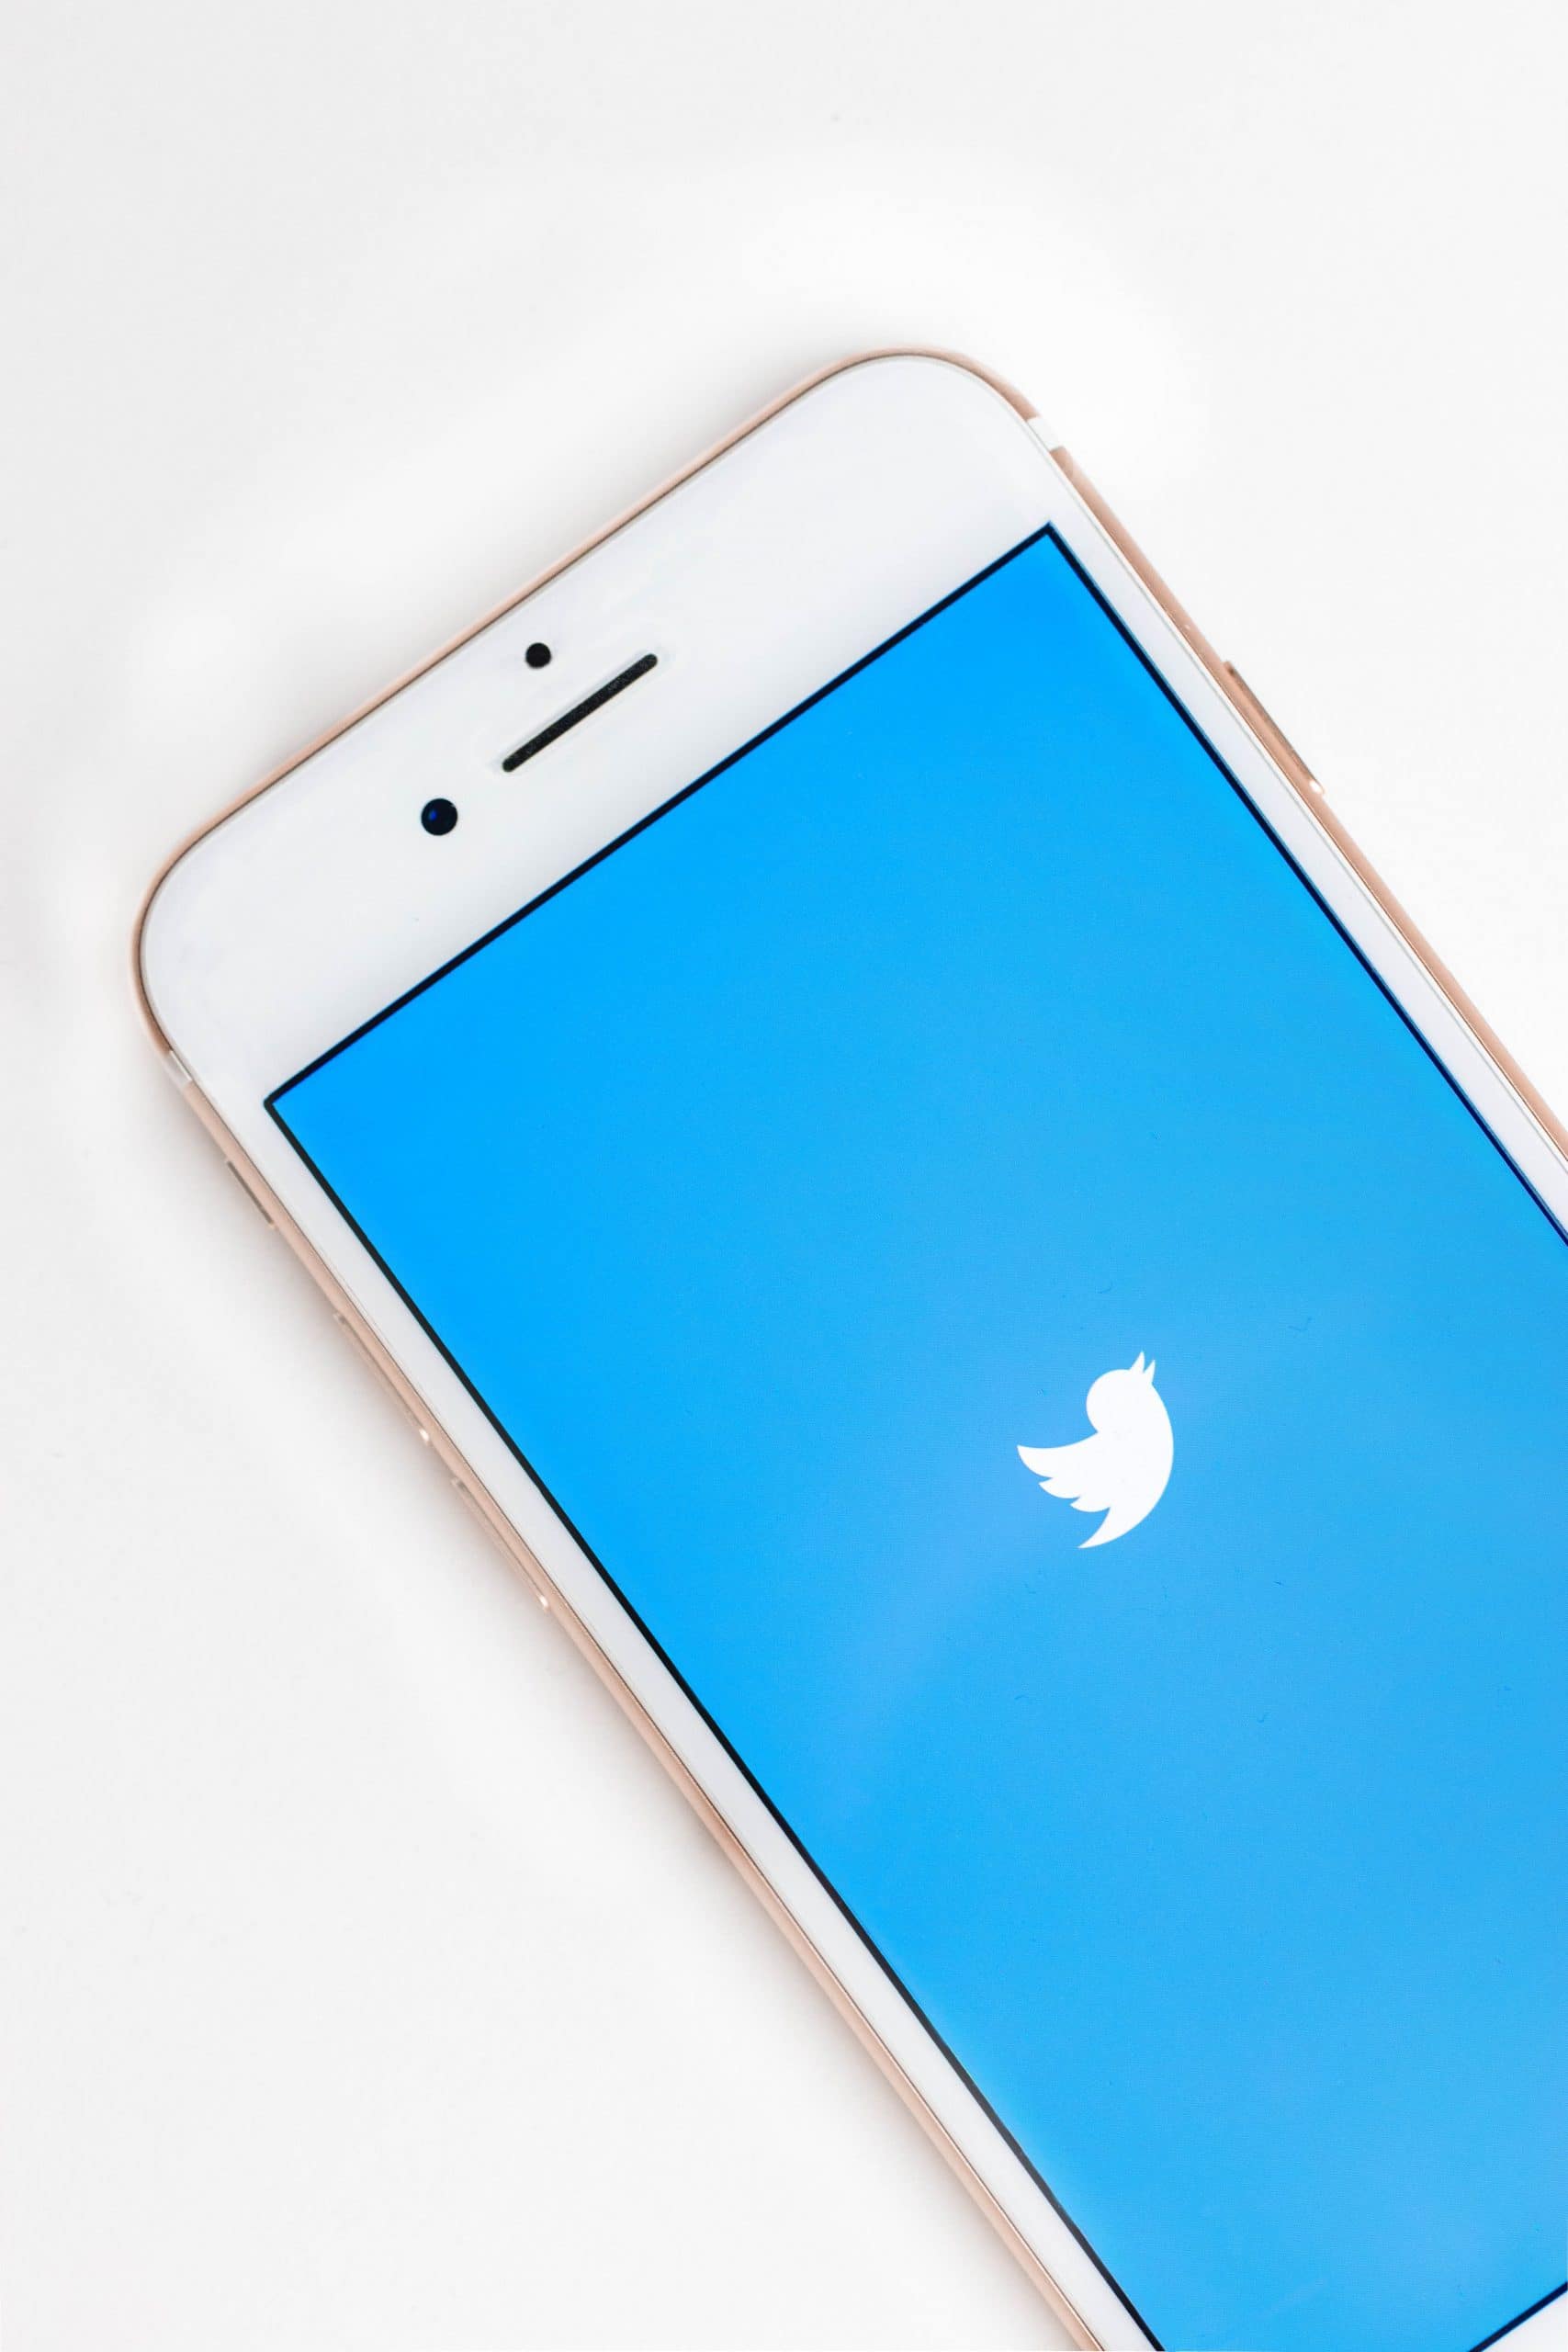 Twitter introduceert nieuwe toegankelijkheidsfunctie: hoge contrasten